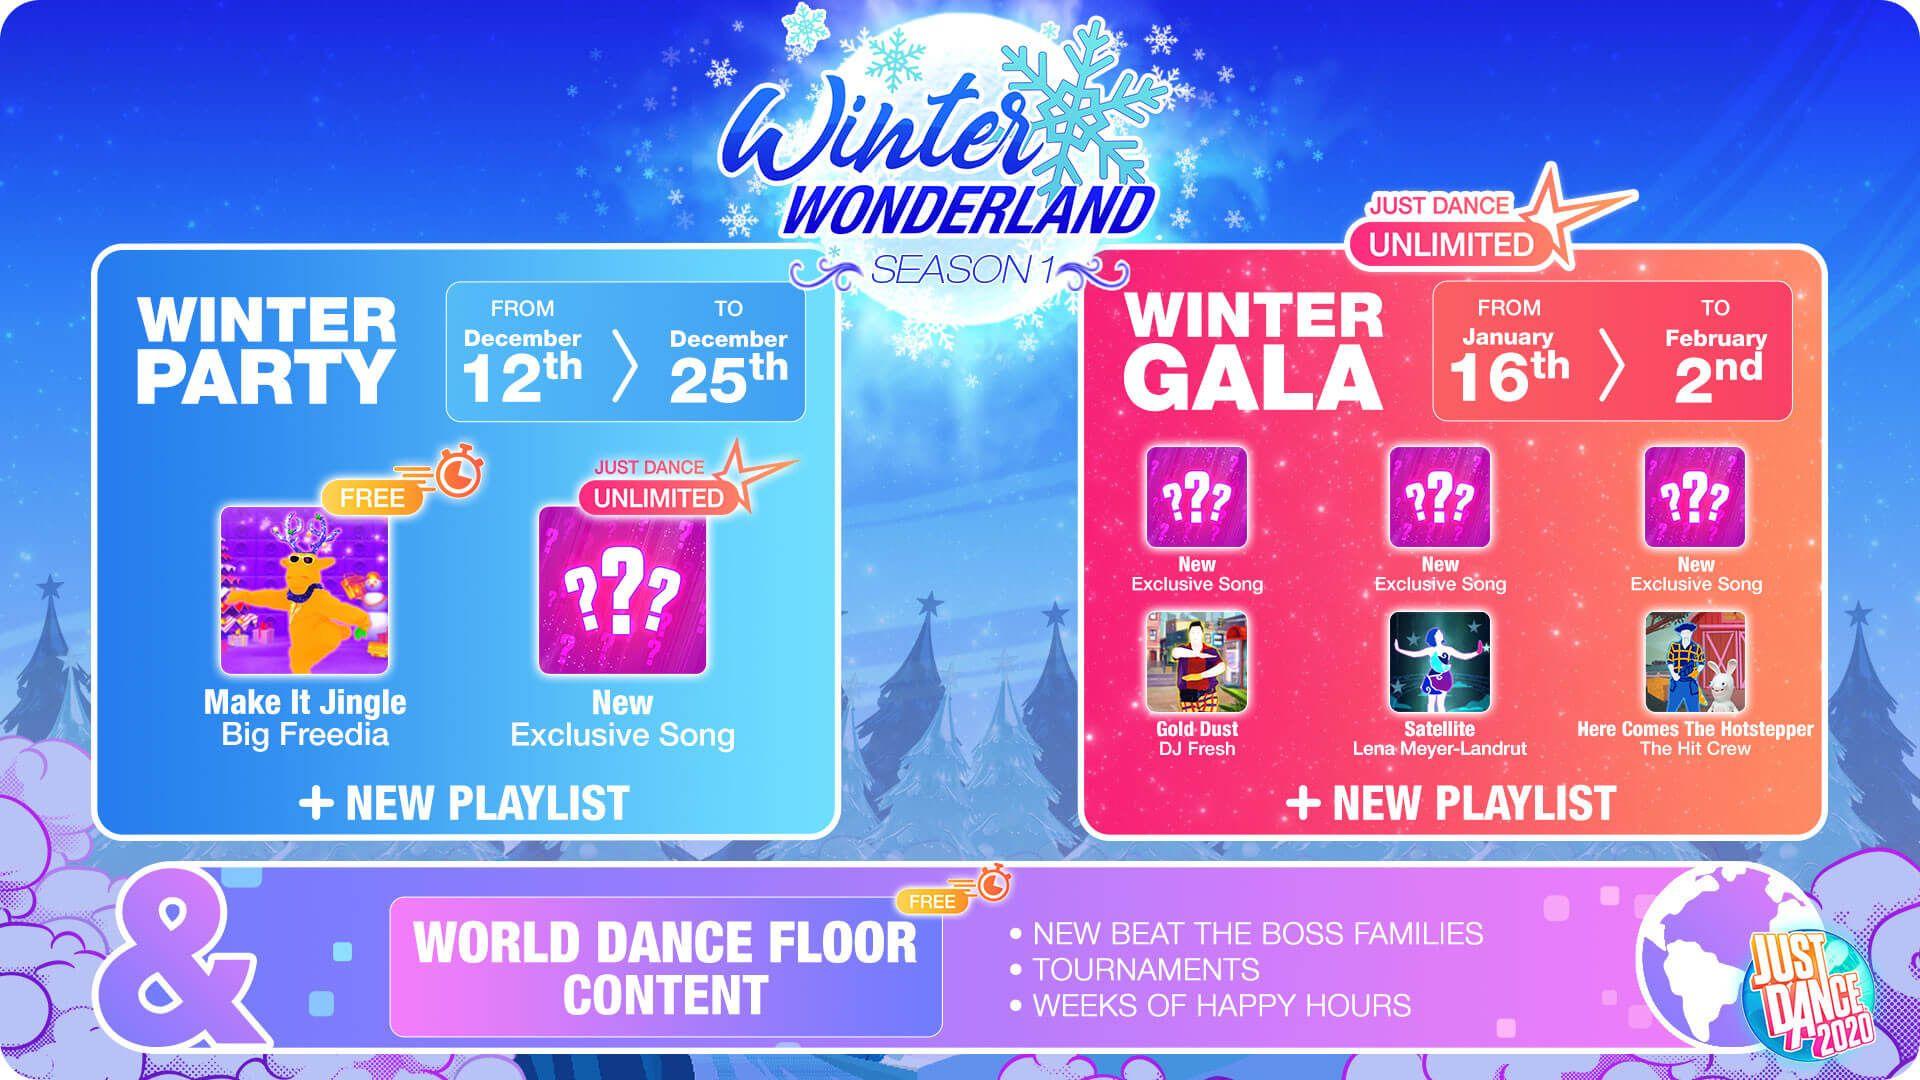 Jd20 Infographic Winter Wonderlandneu